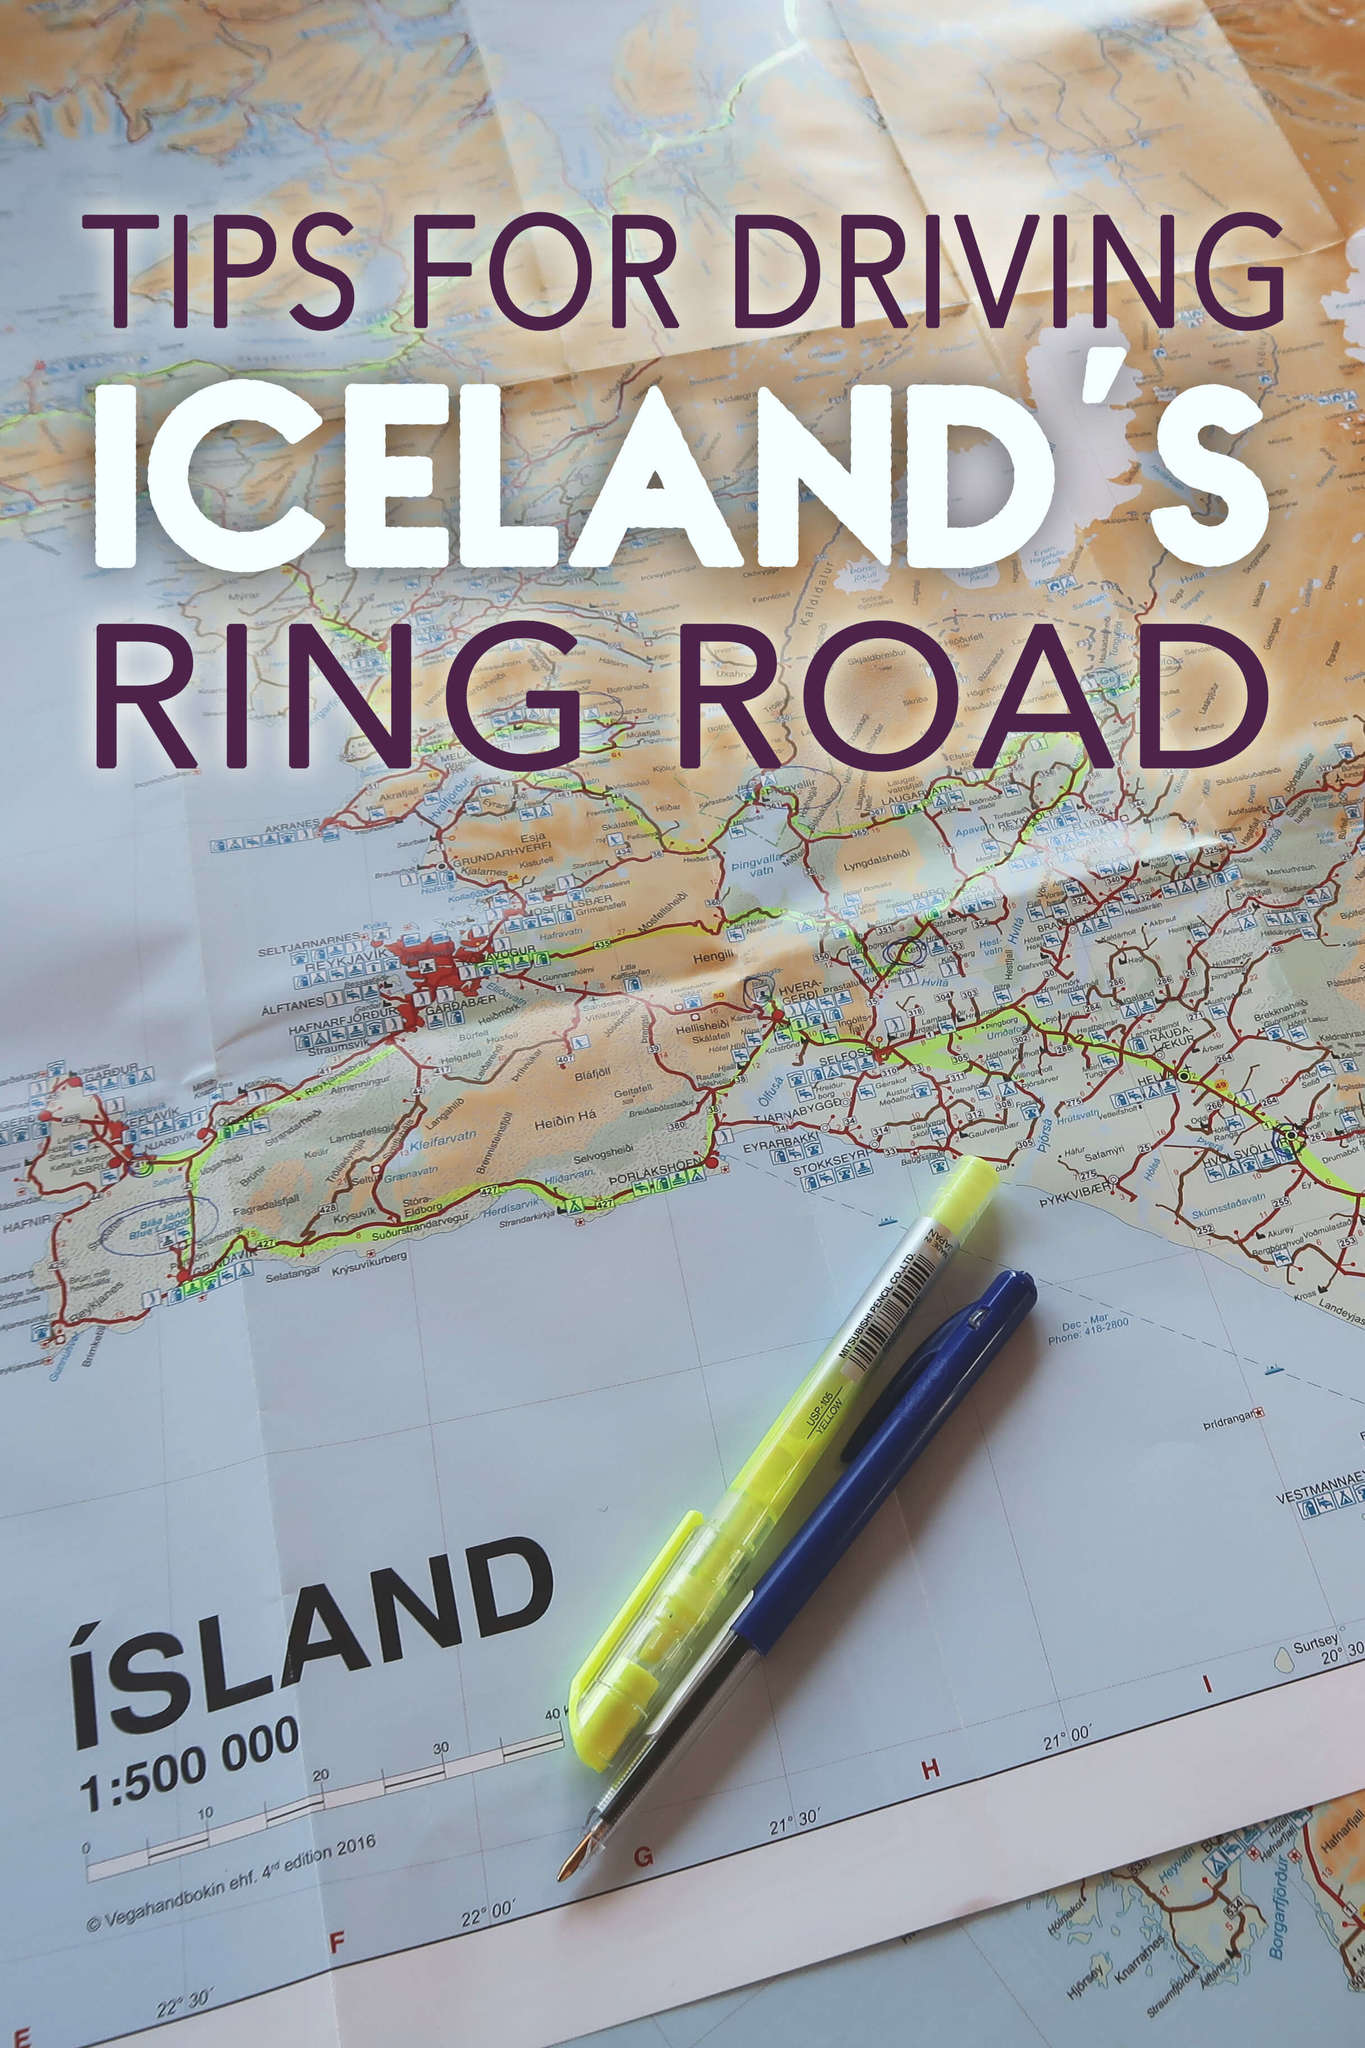 Consigli per guidare la Ring Road islandese's Ring Road